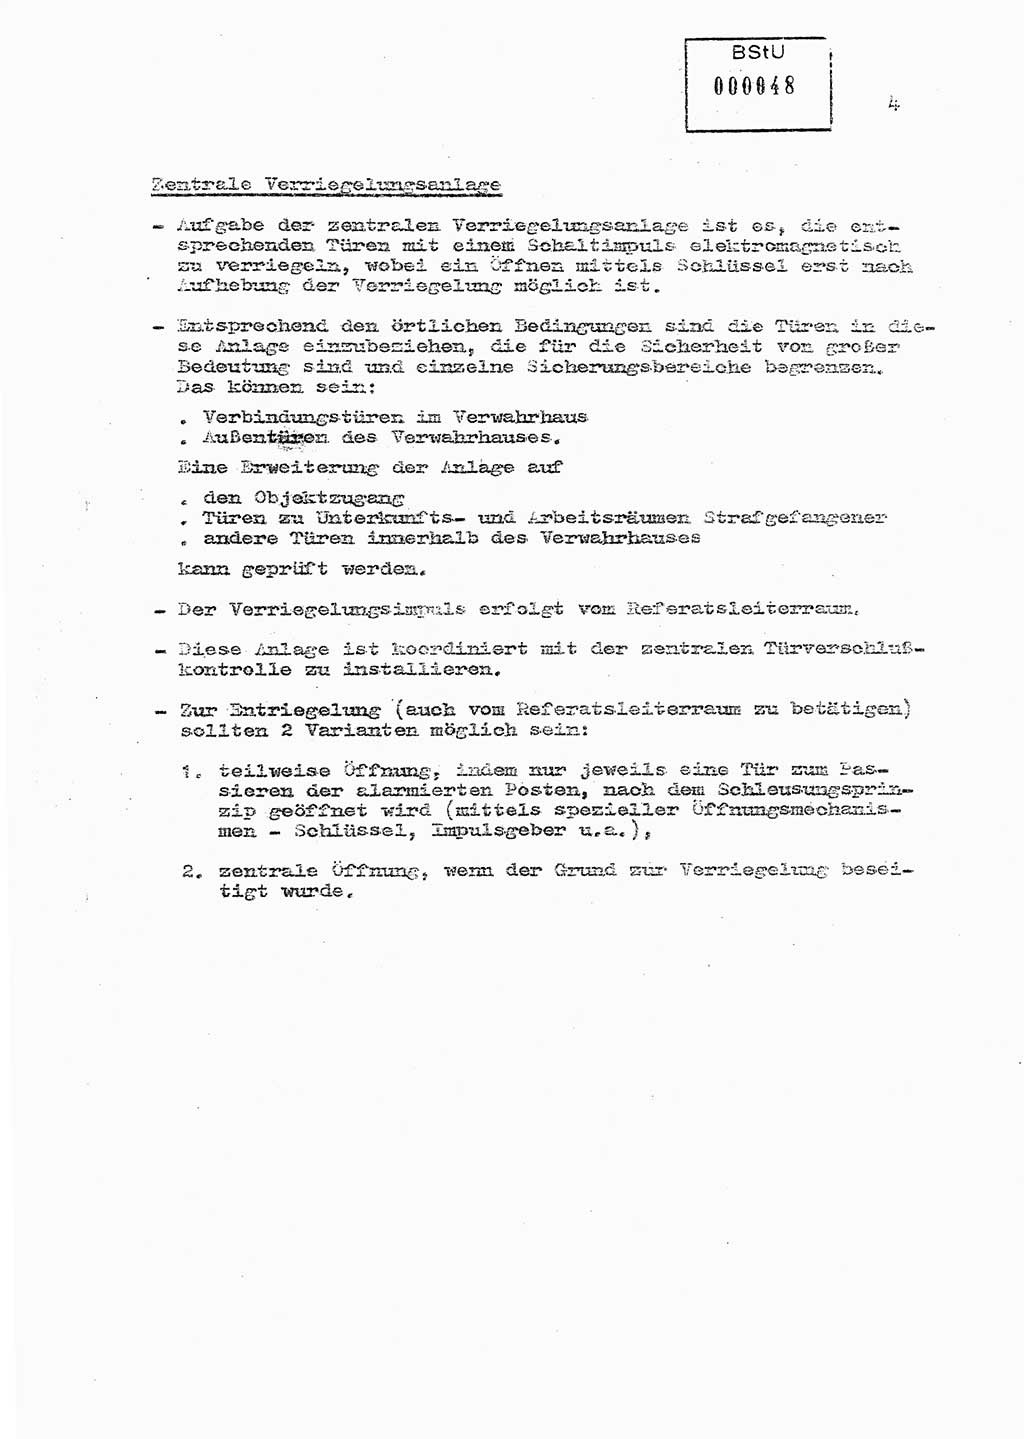 Sicherungs- und Nachrichtentechnik in UHA [Untersuchungshaftanstalten, Ministerium für Staatssicherheit, Deutsche Demokratische Republik (DDR)], Abteilung (Abt.) ⅩⅣ, Berlin 1980, Seite 4 (Si.-NT UHA MfS DDR Abt. ⅩⅣ /80 1980, S. 4)